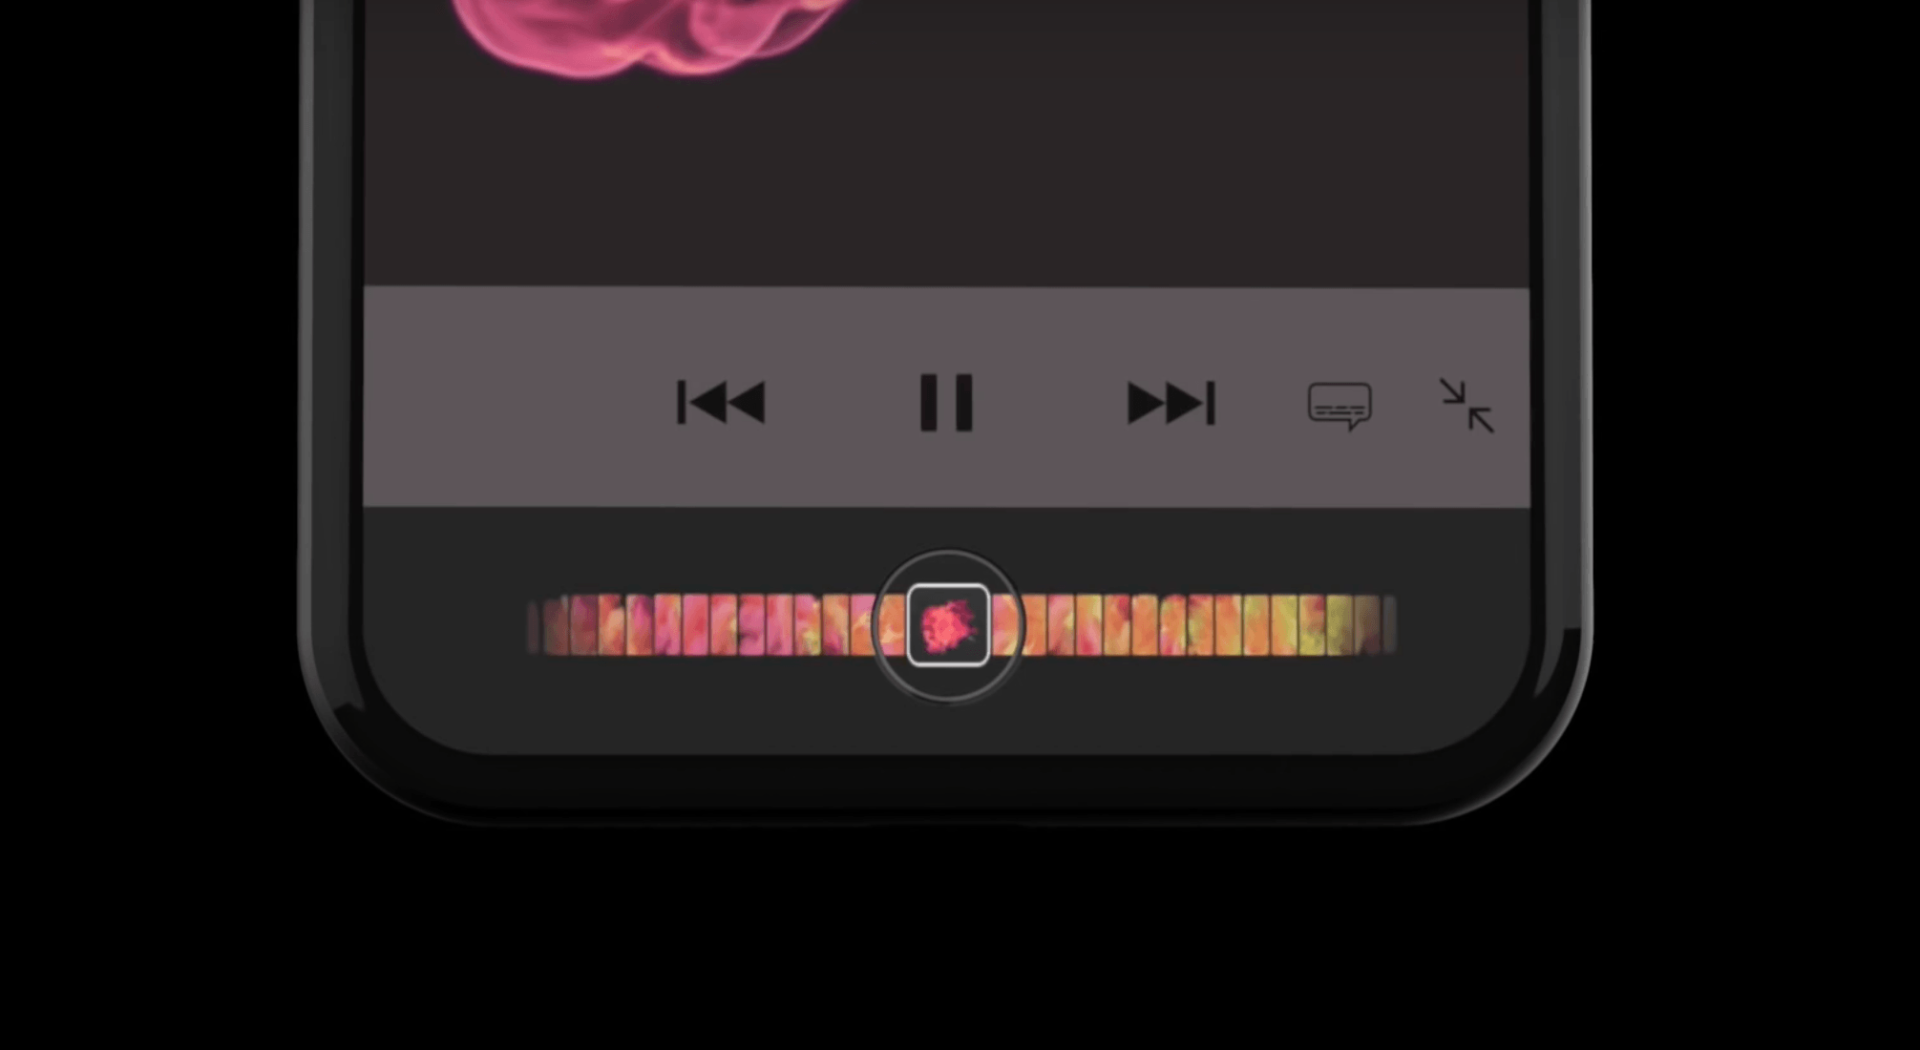 เก๋ไปอีก! ชมคอนเซปต์ iPhone 8 พร้อม Touch Bar แบบ MacBook Pro